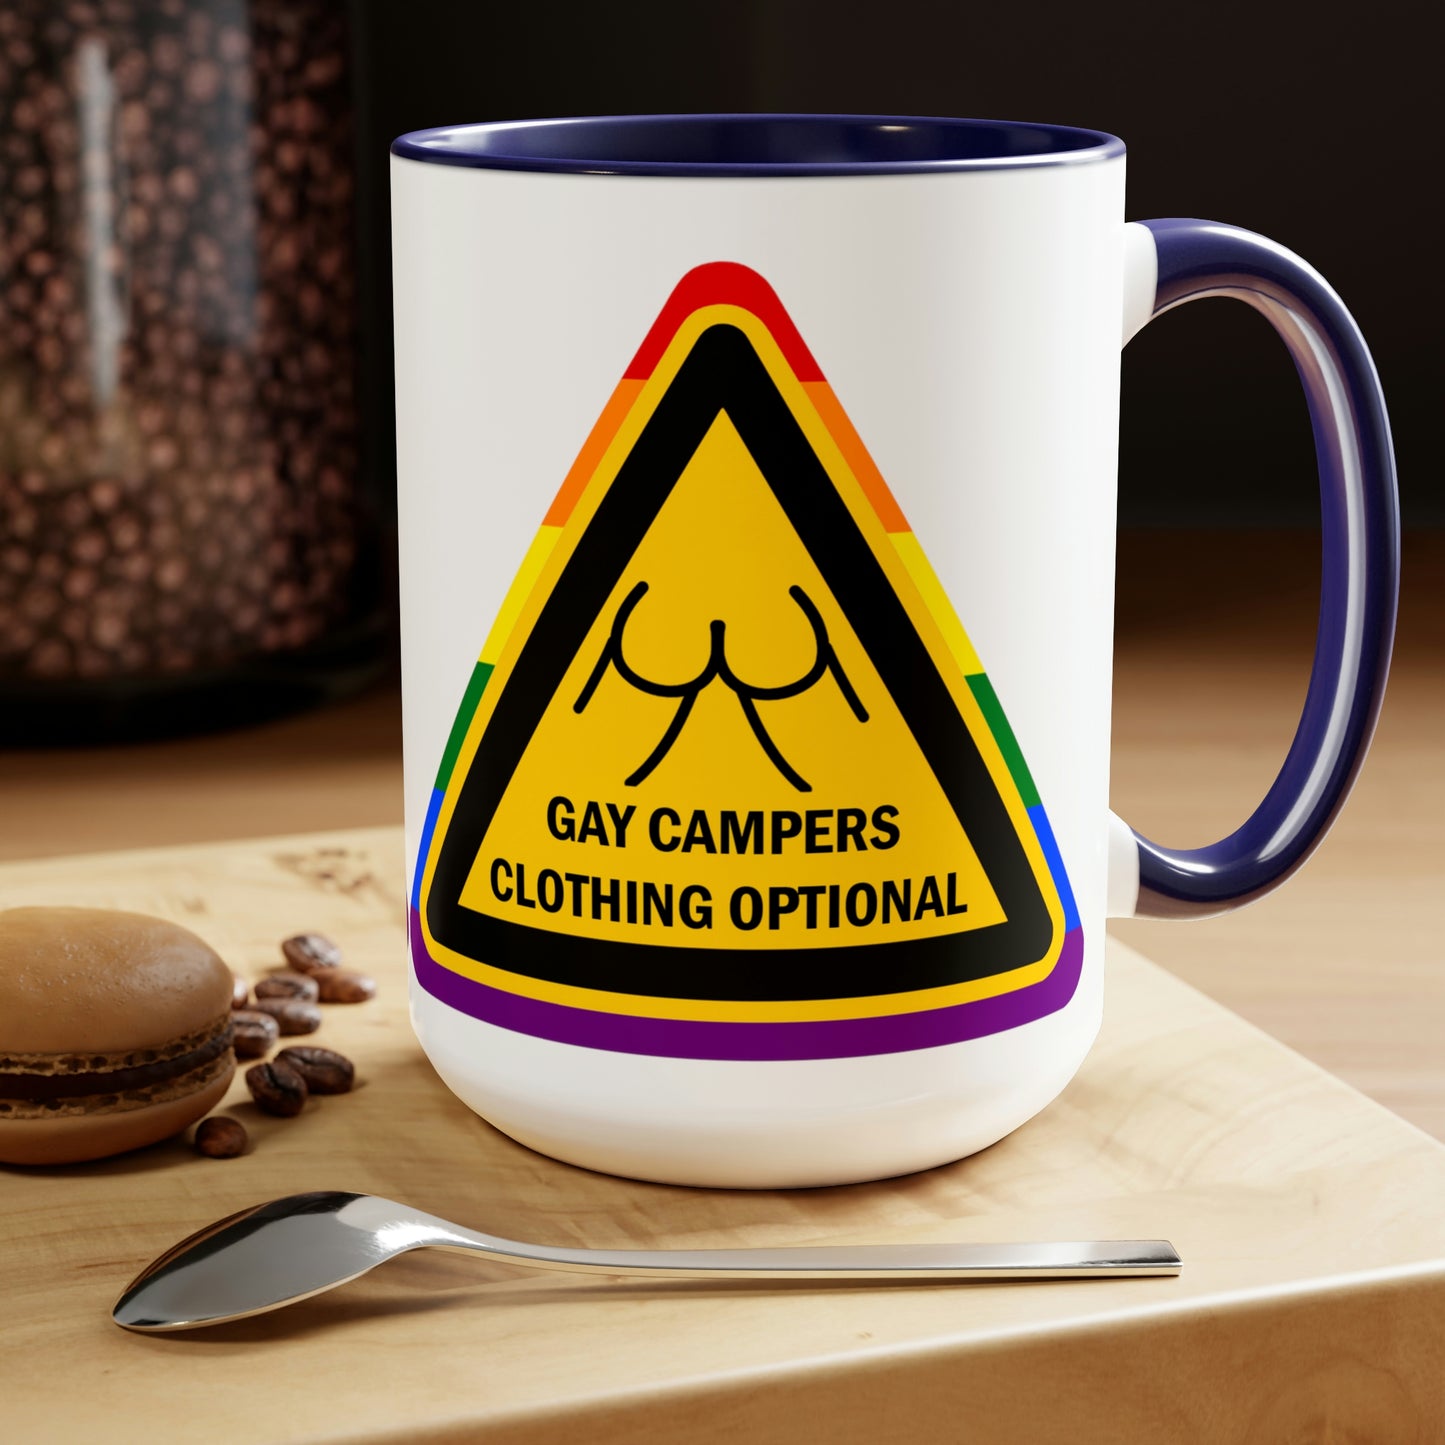 Gay Campers - Tasses à café bicolores avec panneau d'avertissement pour vêtements en option, 15 oz